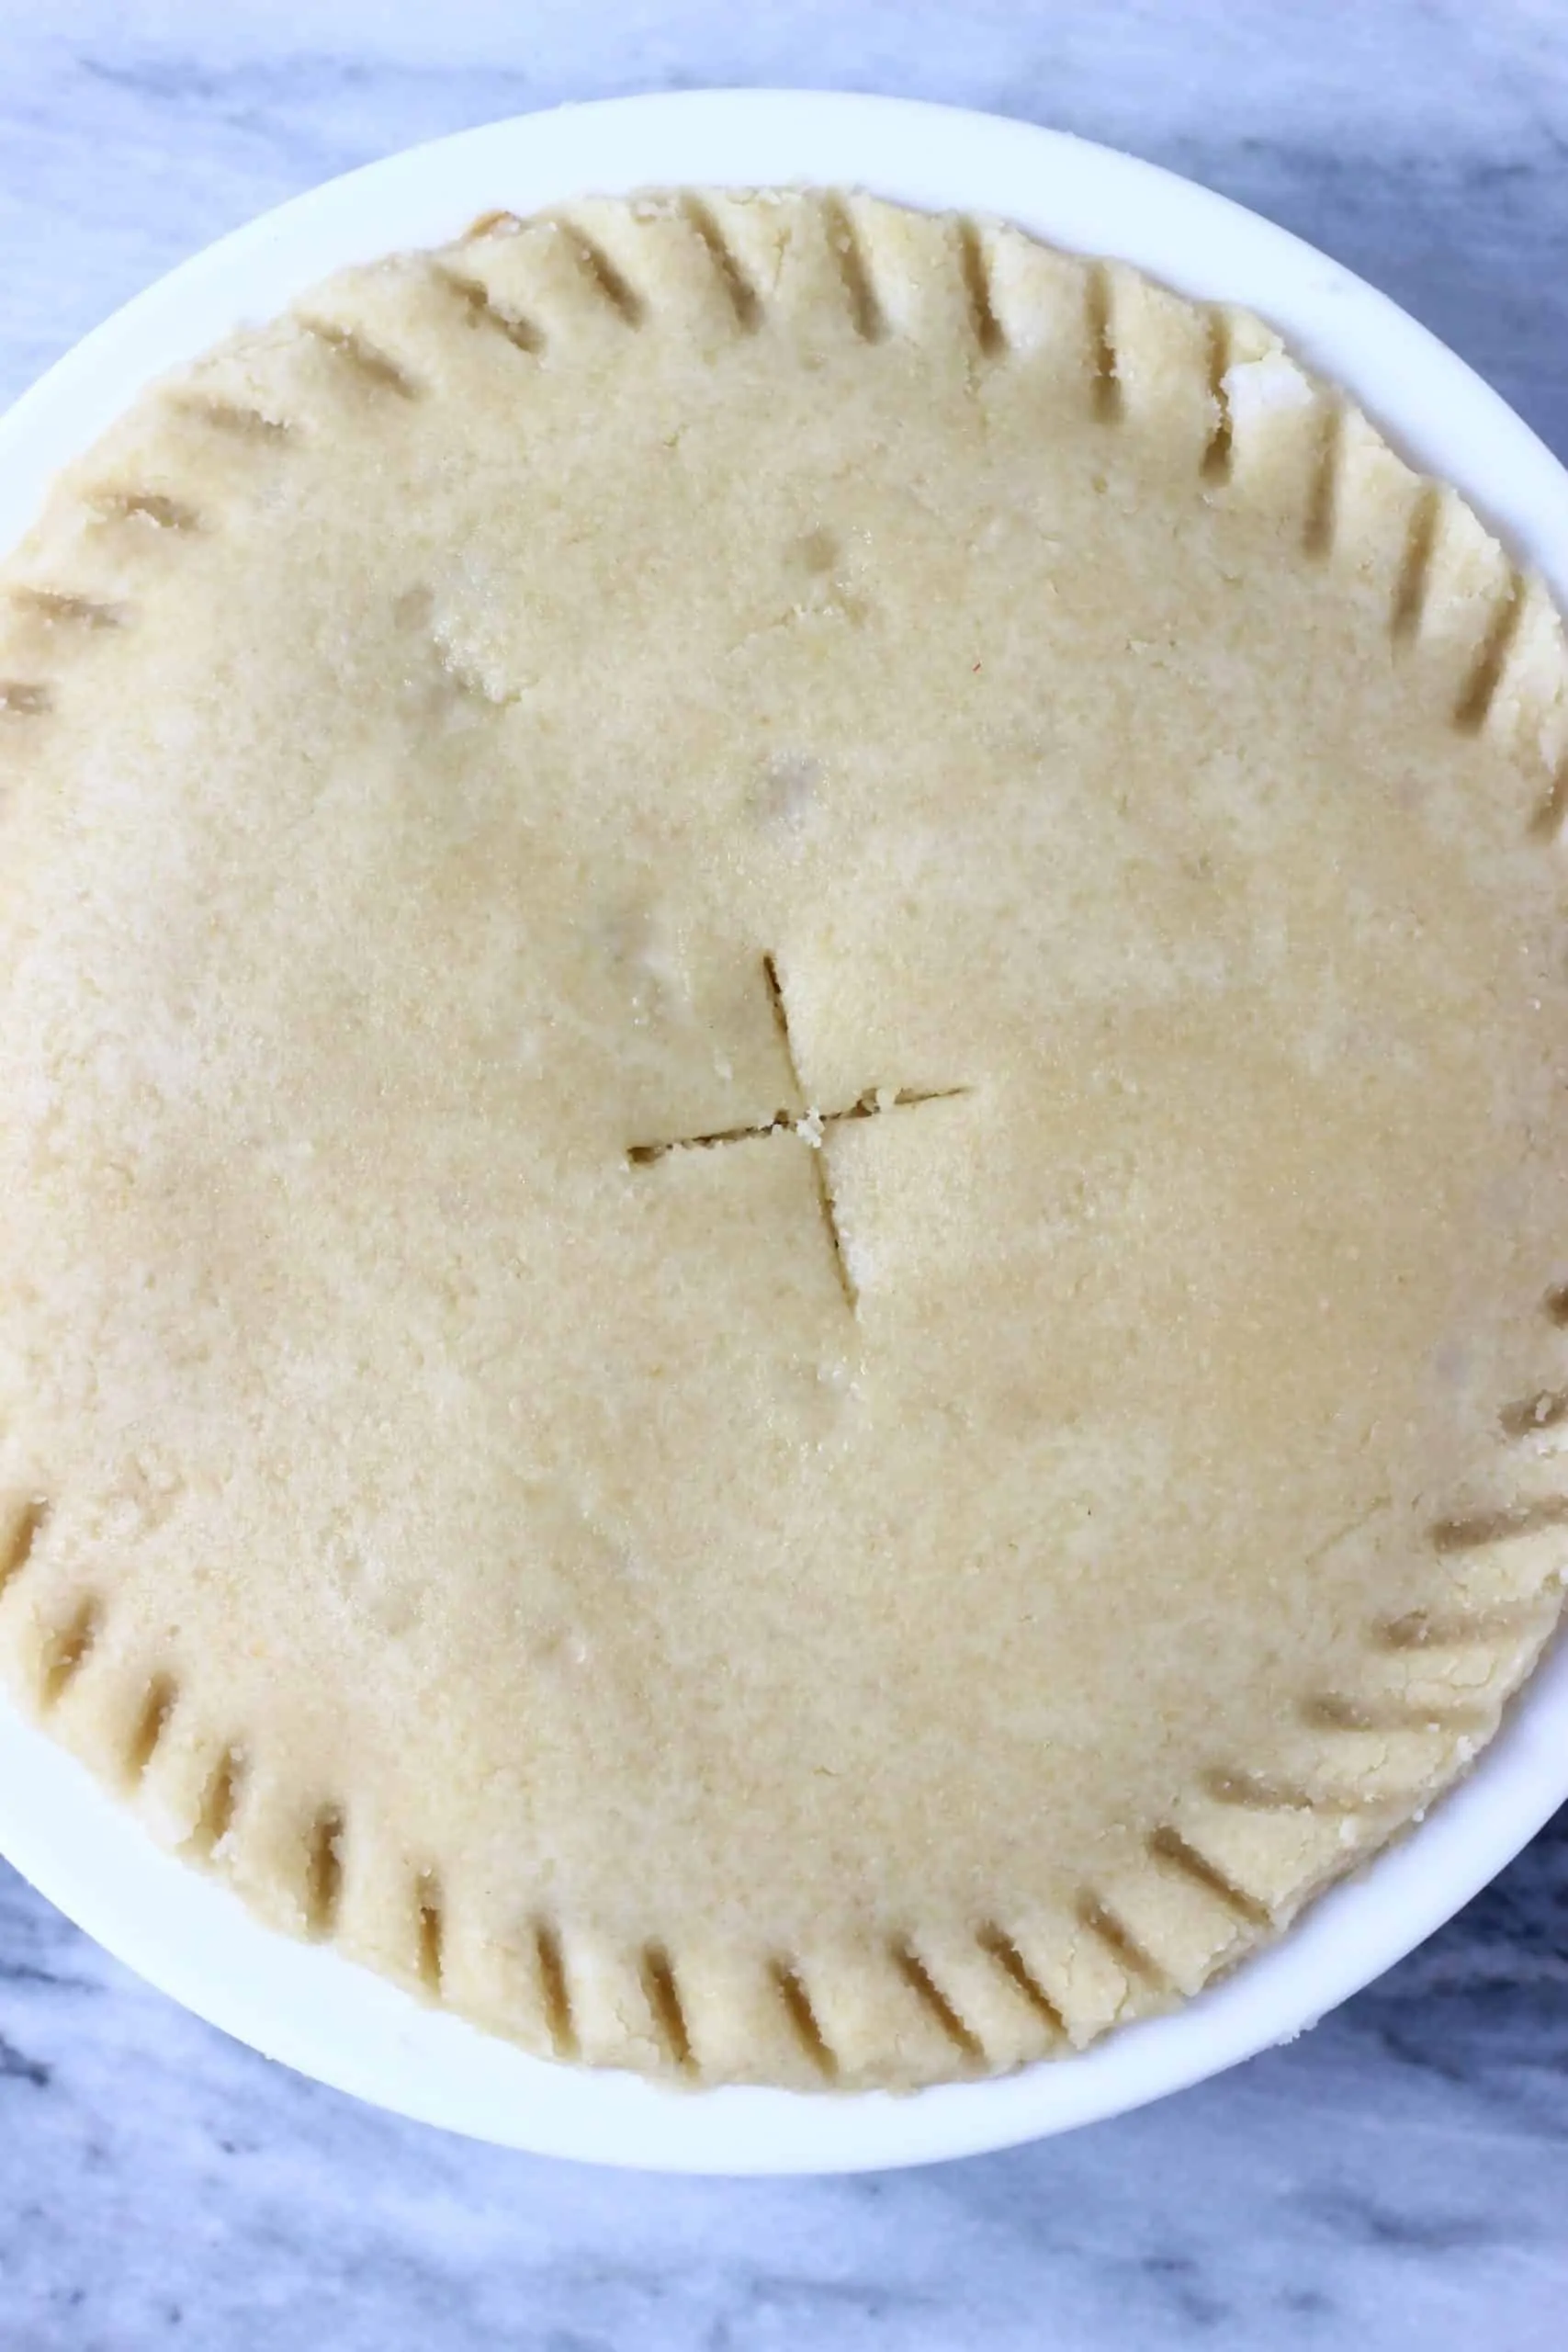 A raw gluten-free vegan apple pie in a pie dish